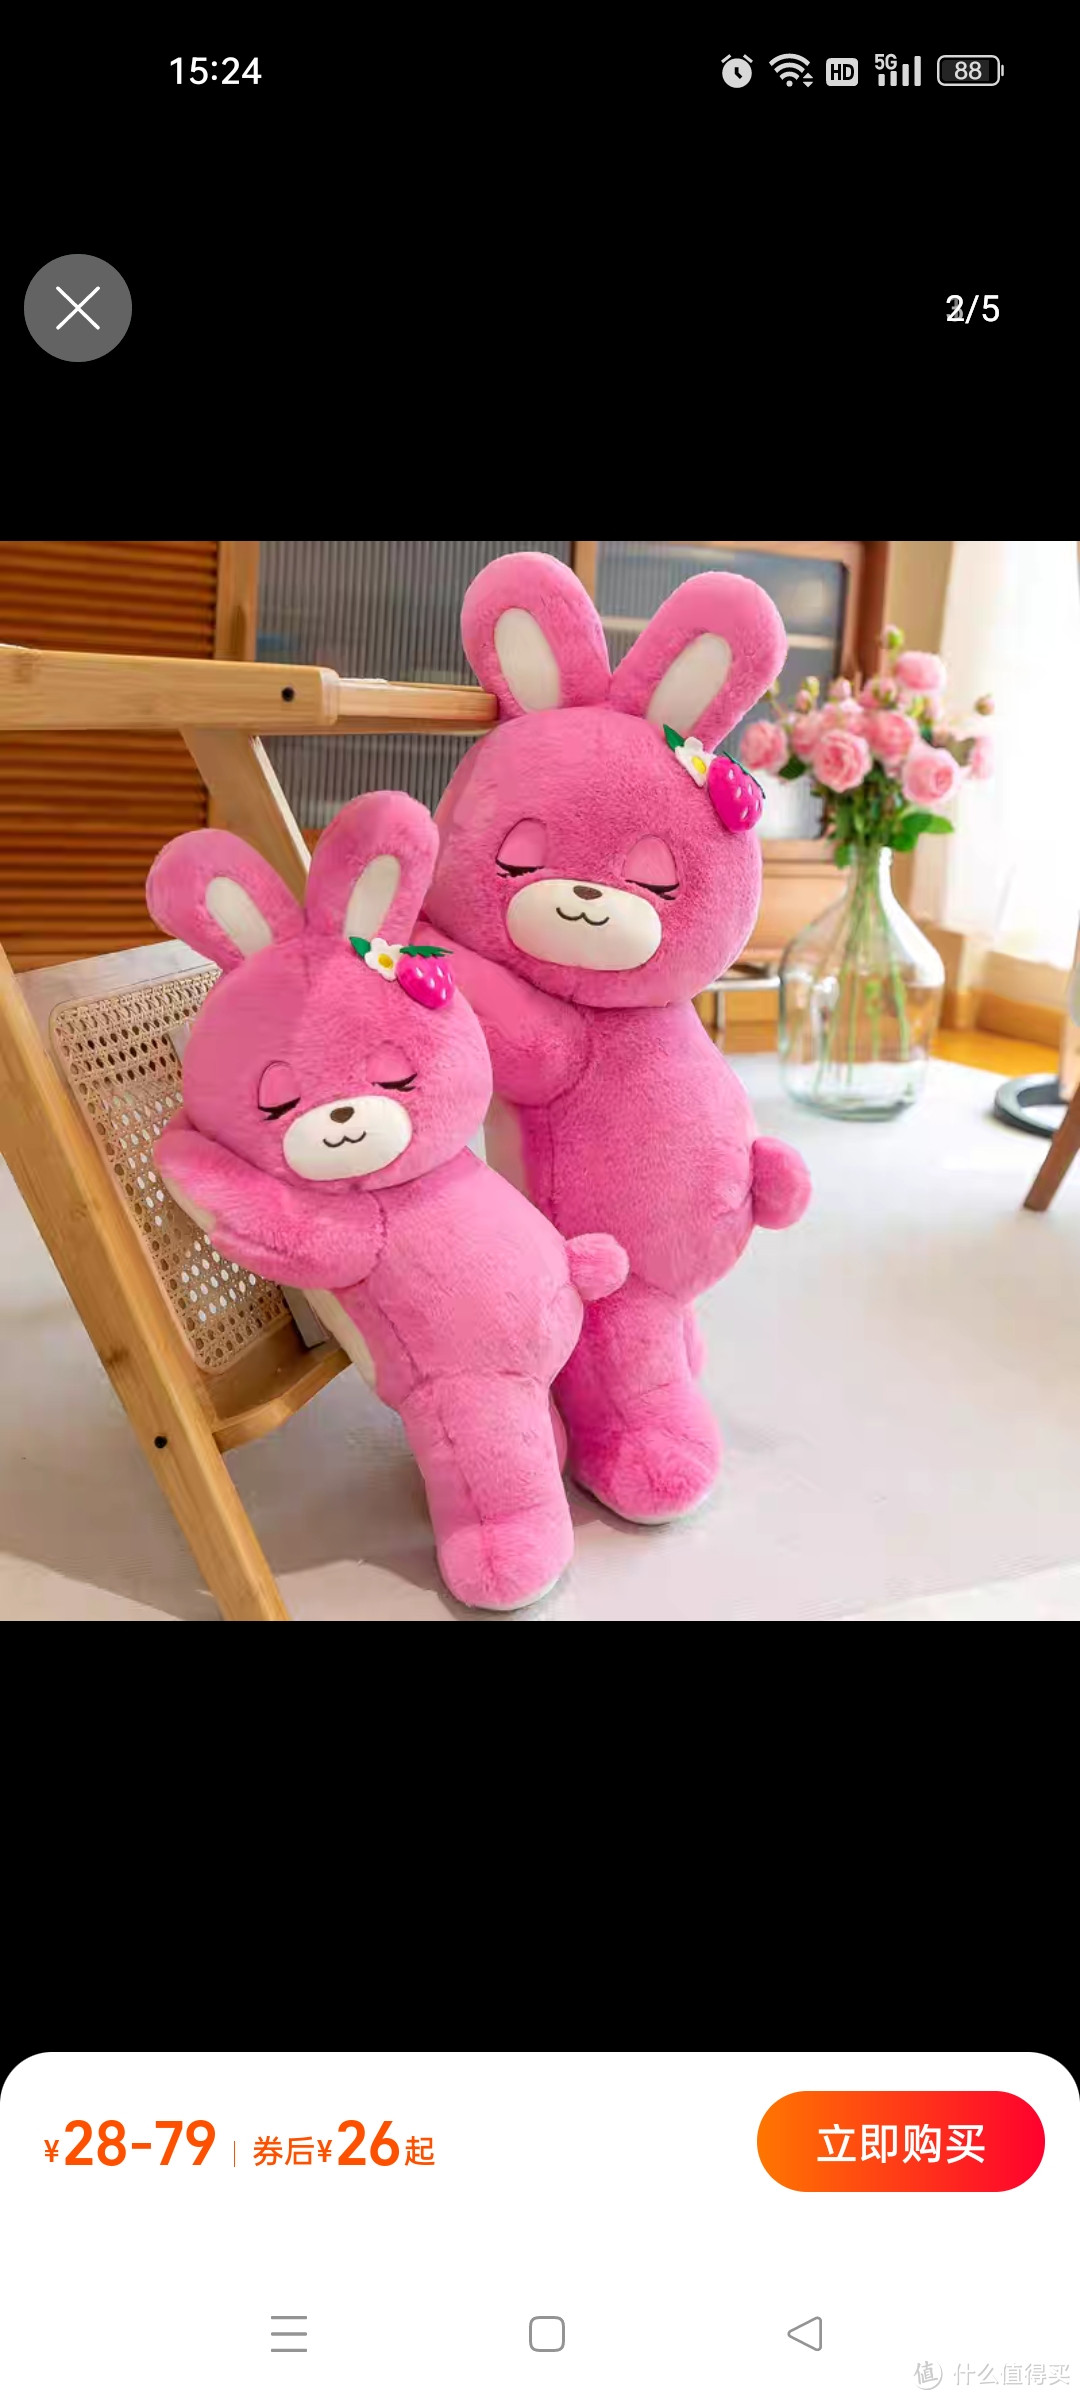 可爱草莓趴趴兔子抱枕女生睡觉夹腿毛绒玩具抱抱熊玩偶布娃娃礼物